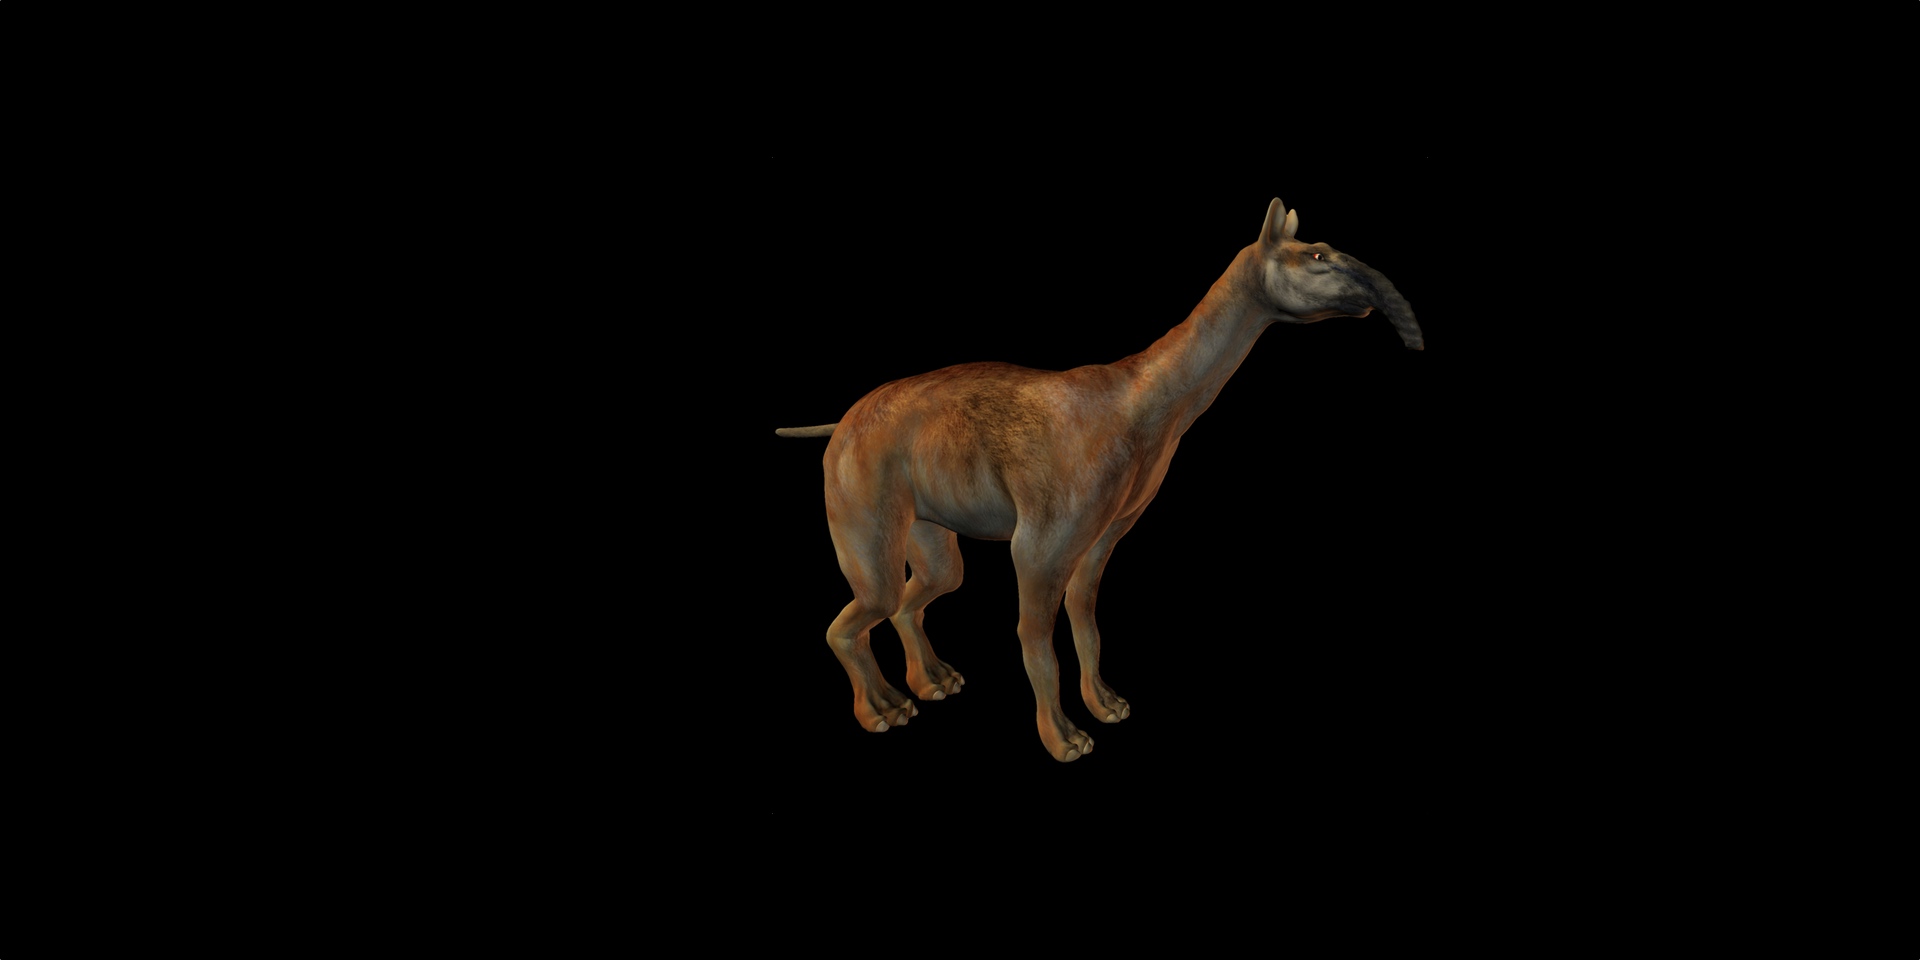 Le&nbsp;Macrauchenia patachonica&nbsp;avait un long cou qui, bien qu'il évoque&nbsp;la girafe, n'en était pas un cousin proche. © Andreas Meyer, fotolia